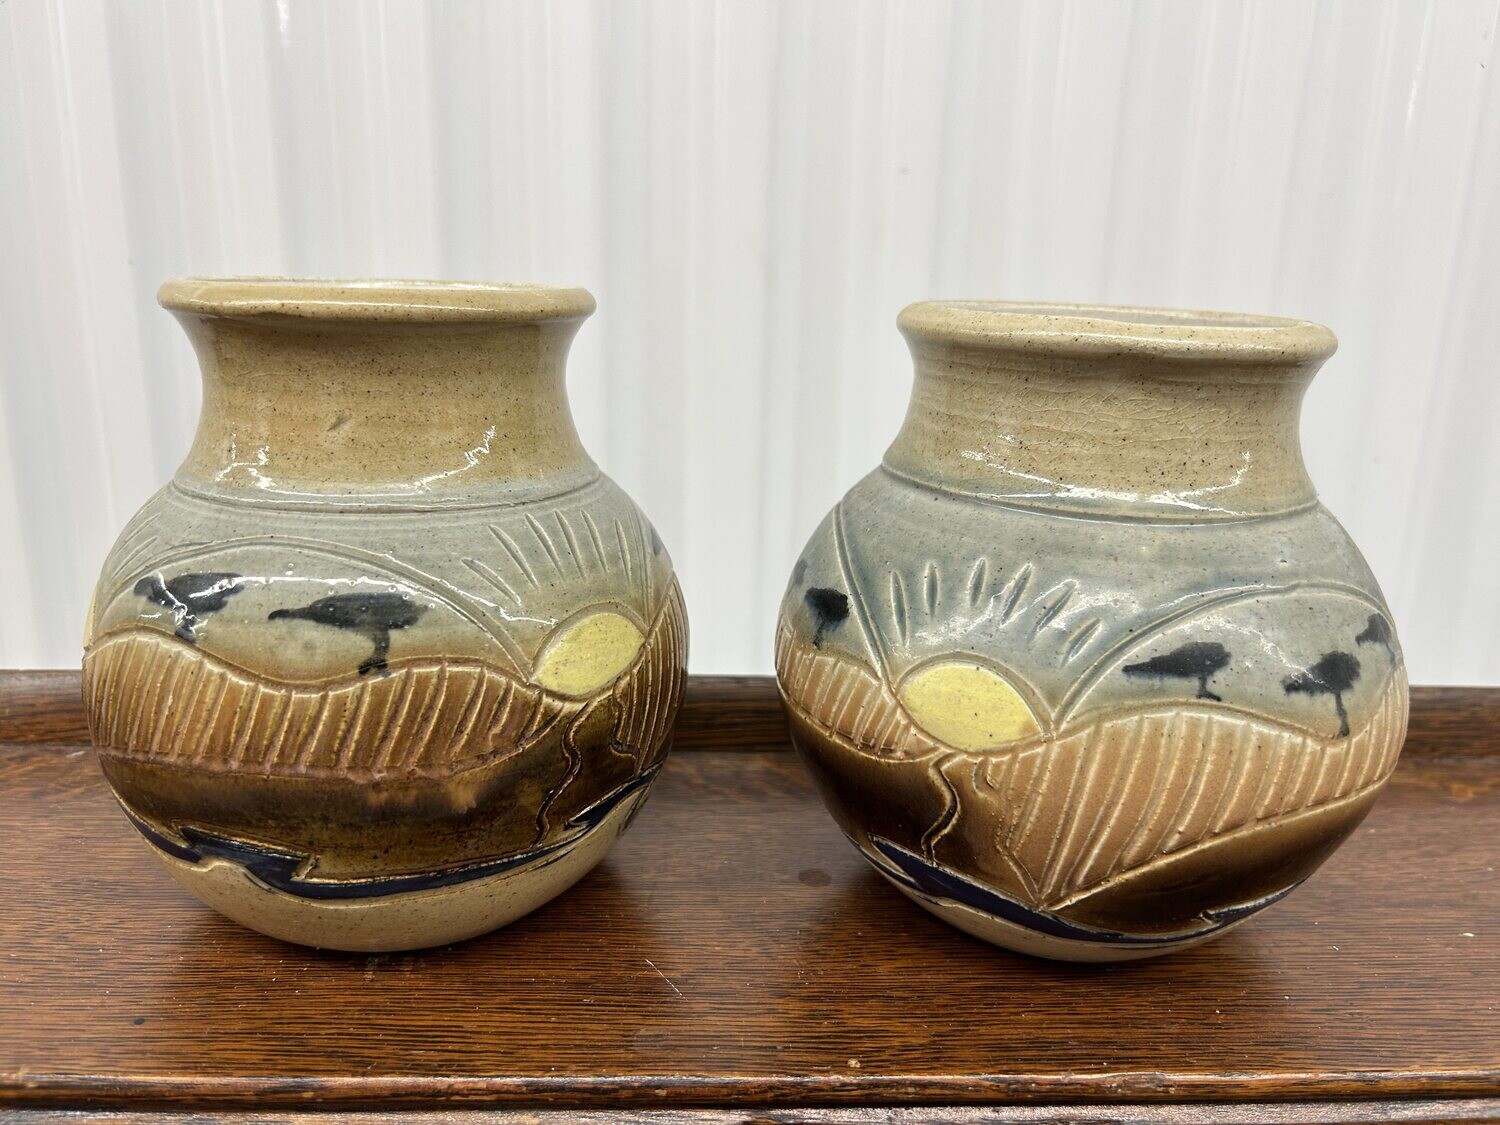 Pair of Keramos Vases, "Curacao" #2314